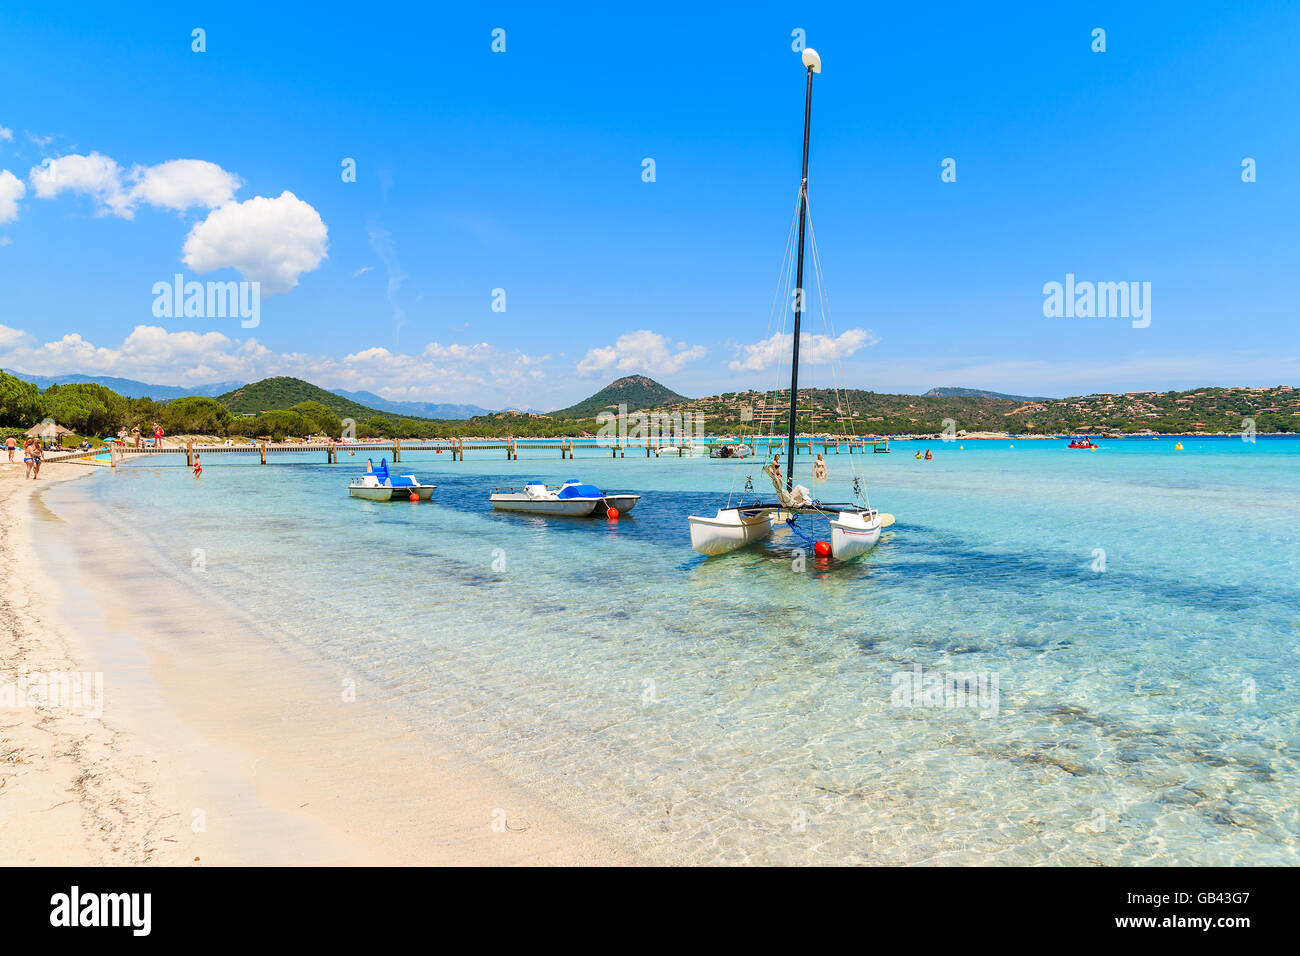 Voile bateau sur l'eau de mer turquoise de la plage de Santa giulia, Corse, France Banque D'Images